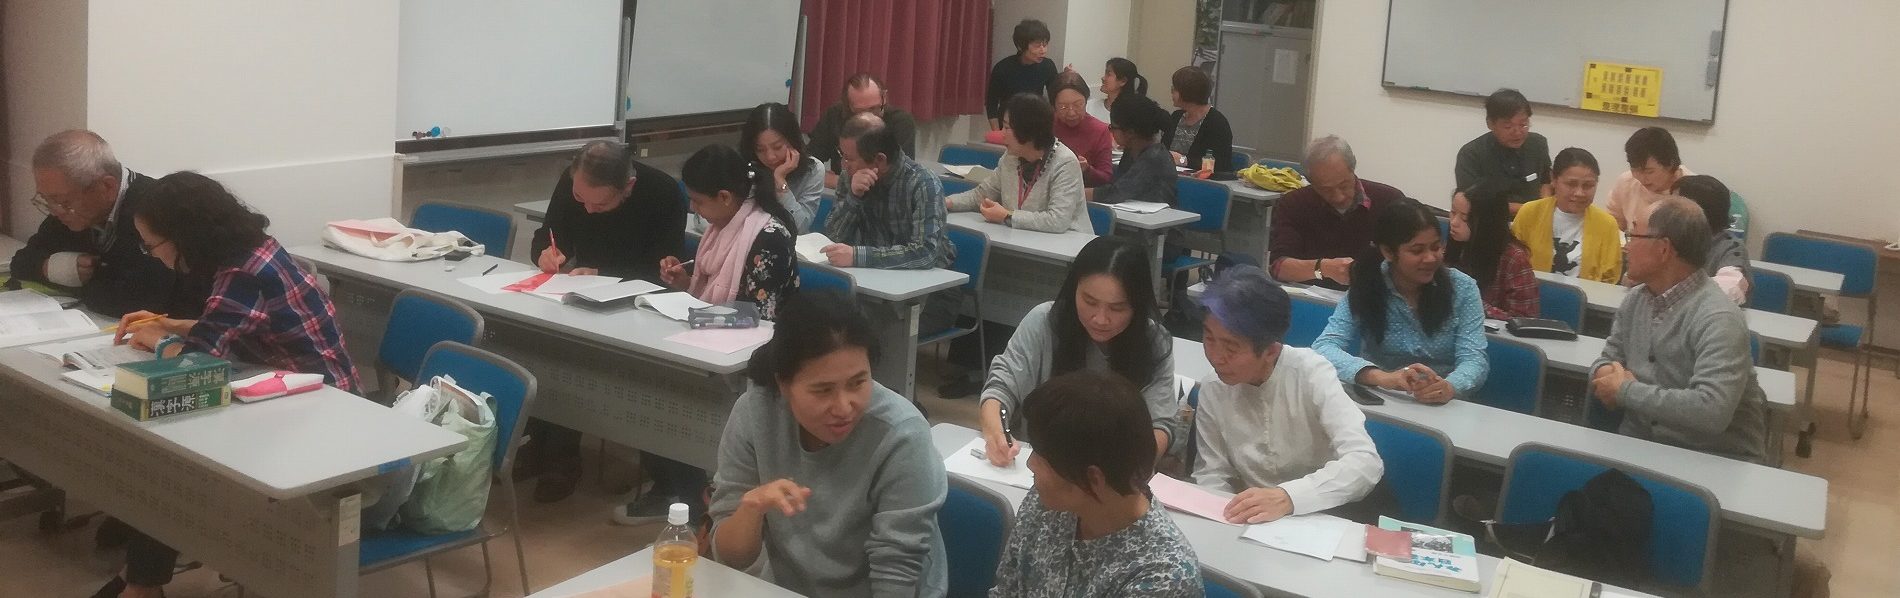 町田市で日本語学習支援をしているボランティア団体